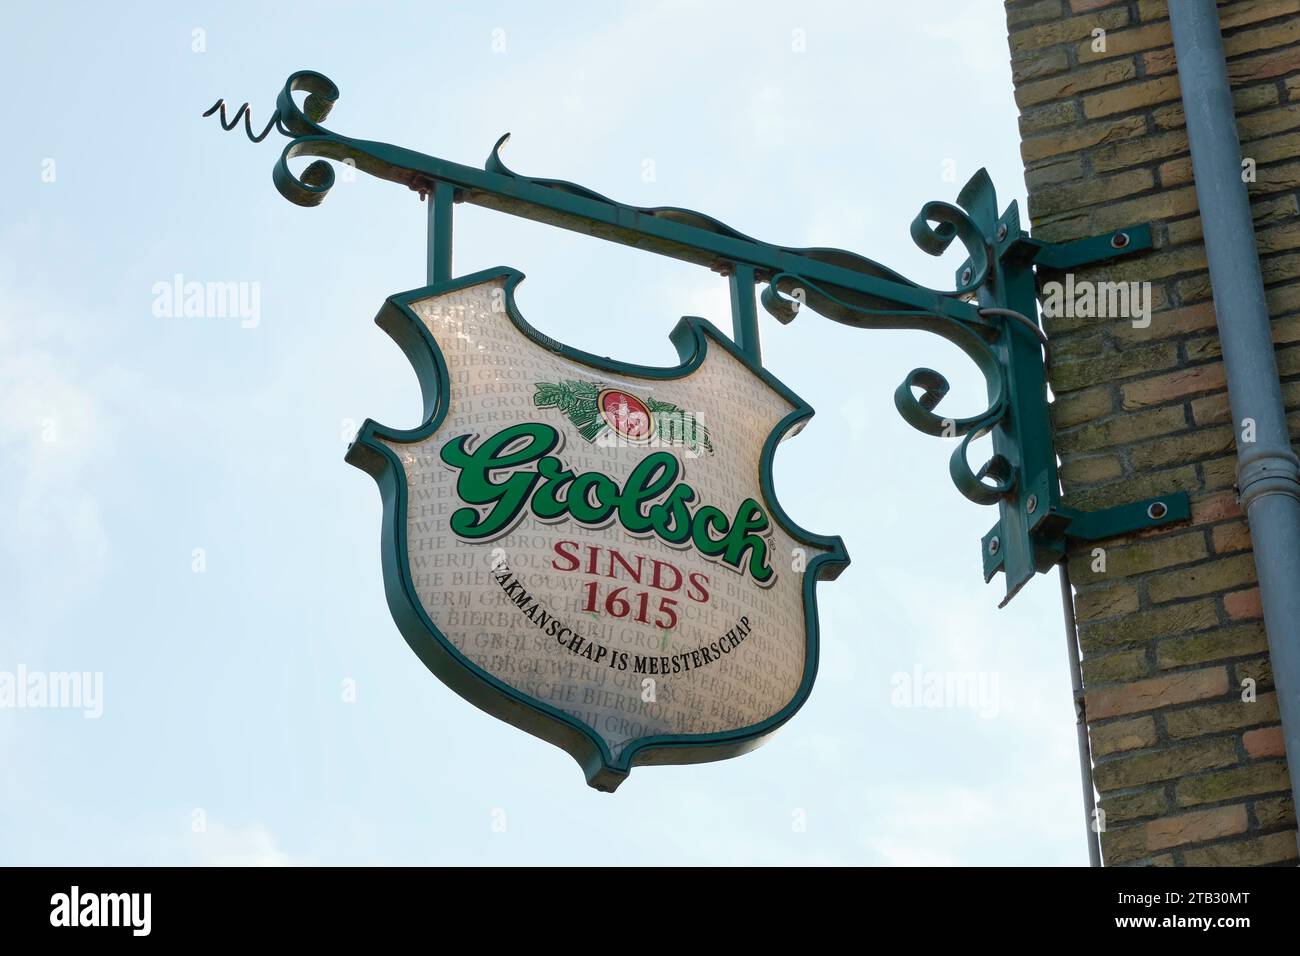 Logo Grolsch su un cartello dall'aspetto antico in una strada. Grolsch è un marchio di birra prodotto per la prima volta nel 1615 a Groenlo nei Paesi Bassi Foto Stock